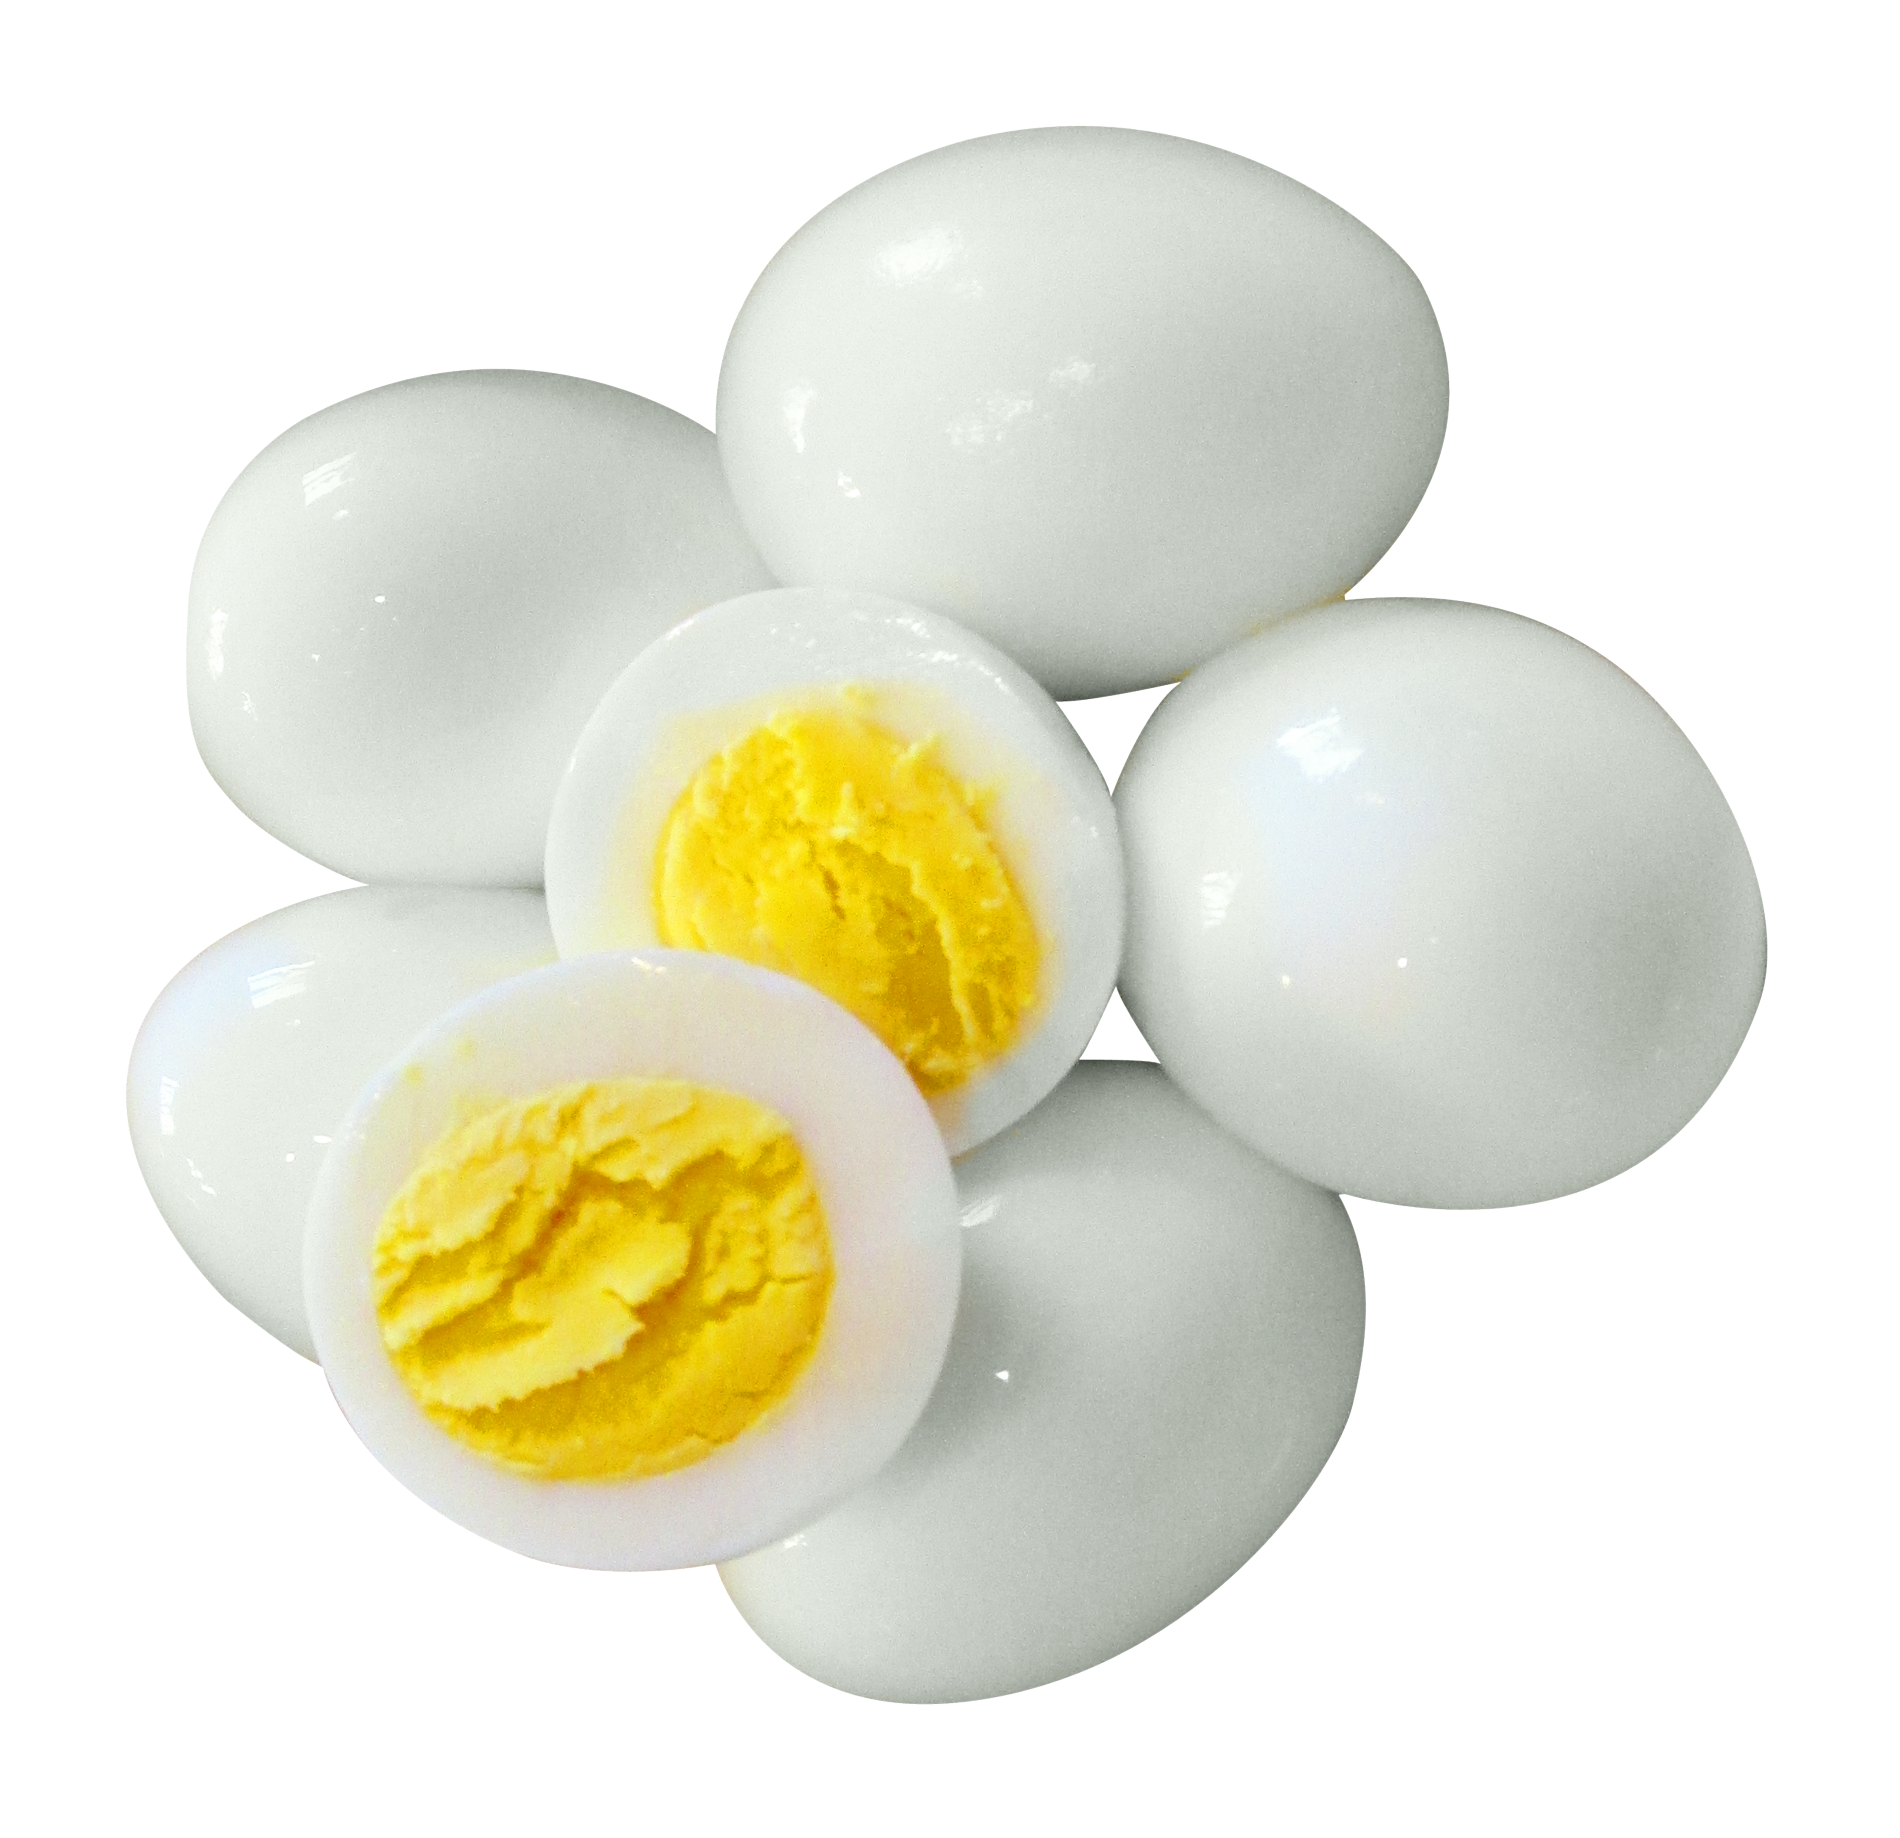 boiled egg png transparent image pngpix #14506